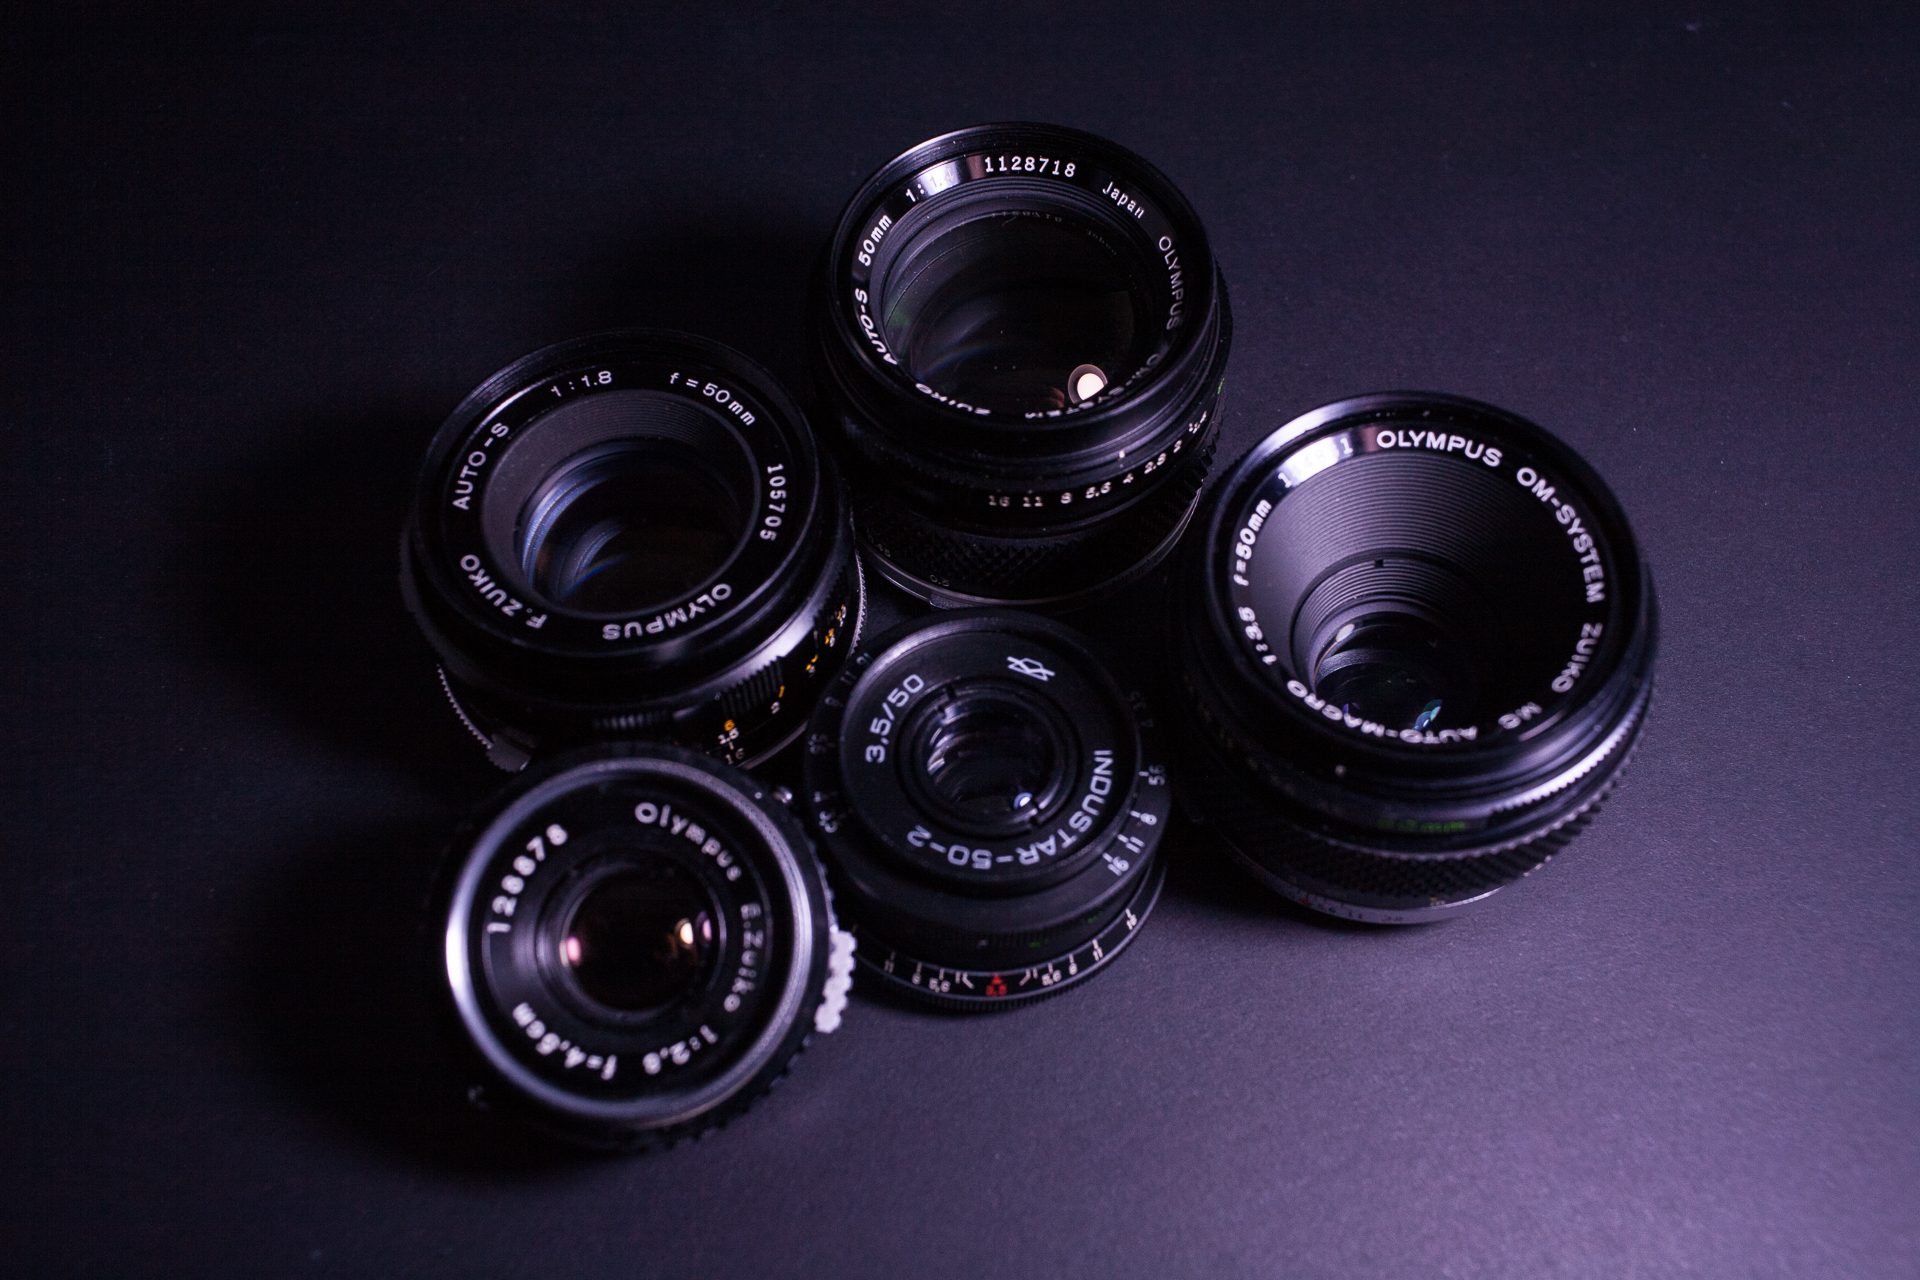 Standard lenses